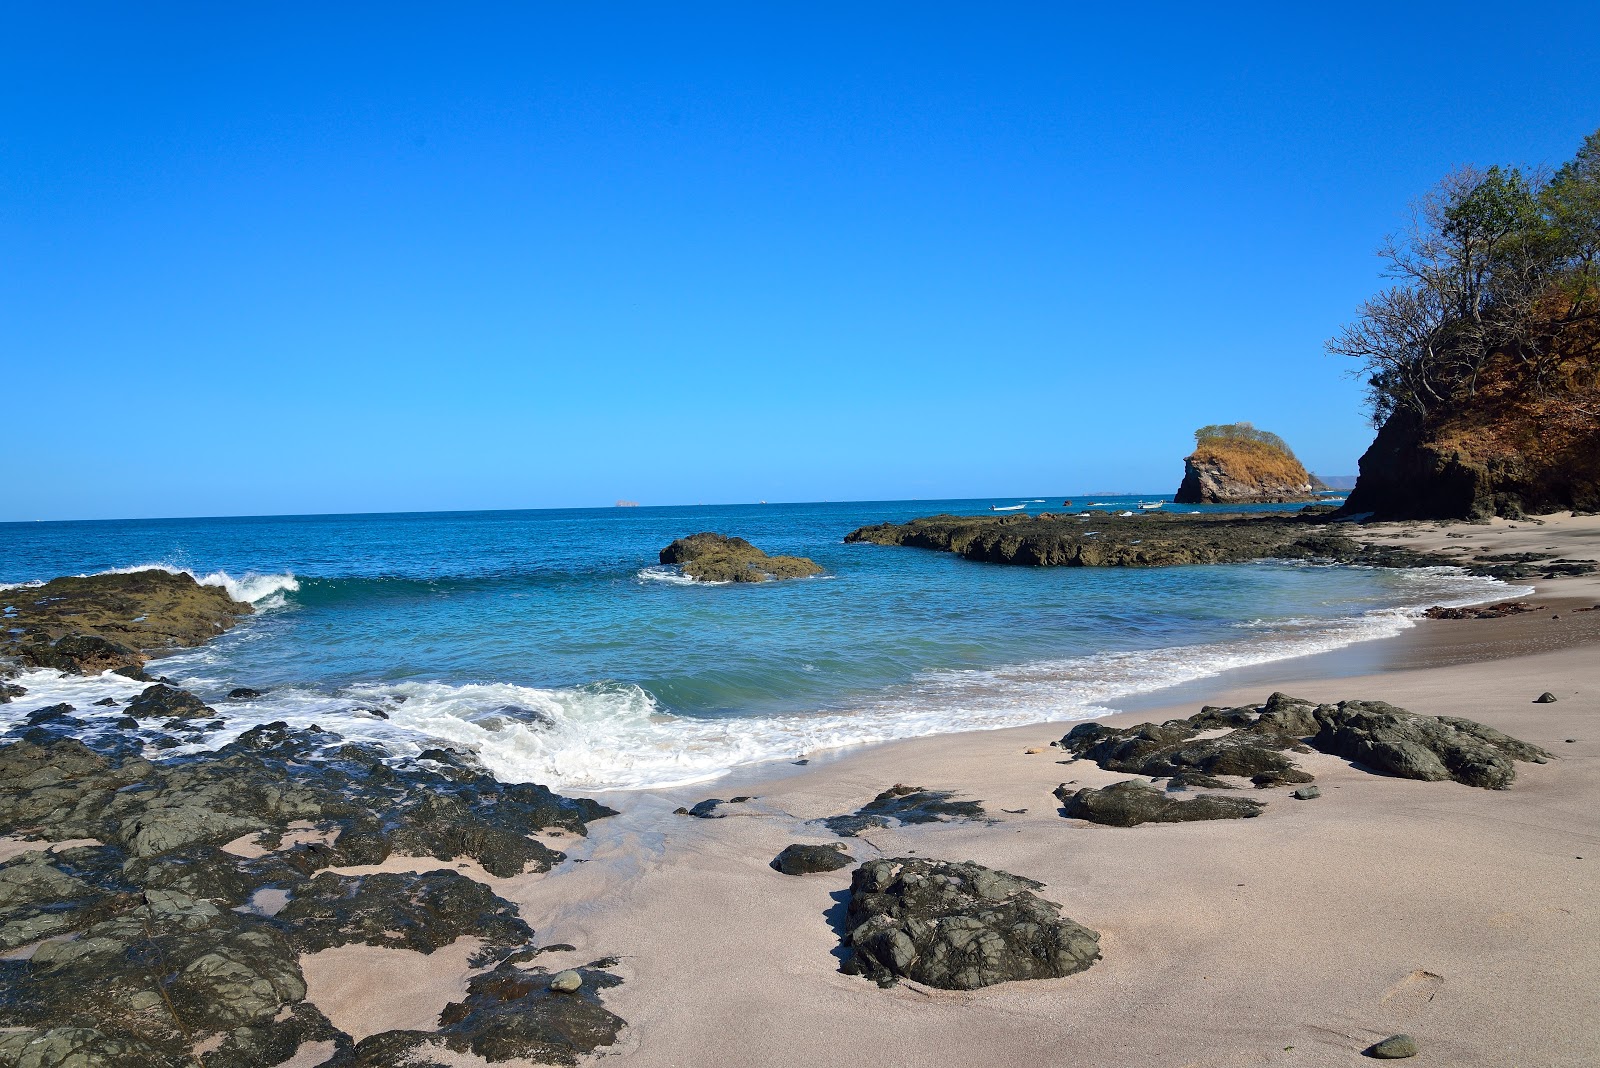 Playa Roble'in fotoğrafı geniş plaj ile birlikte